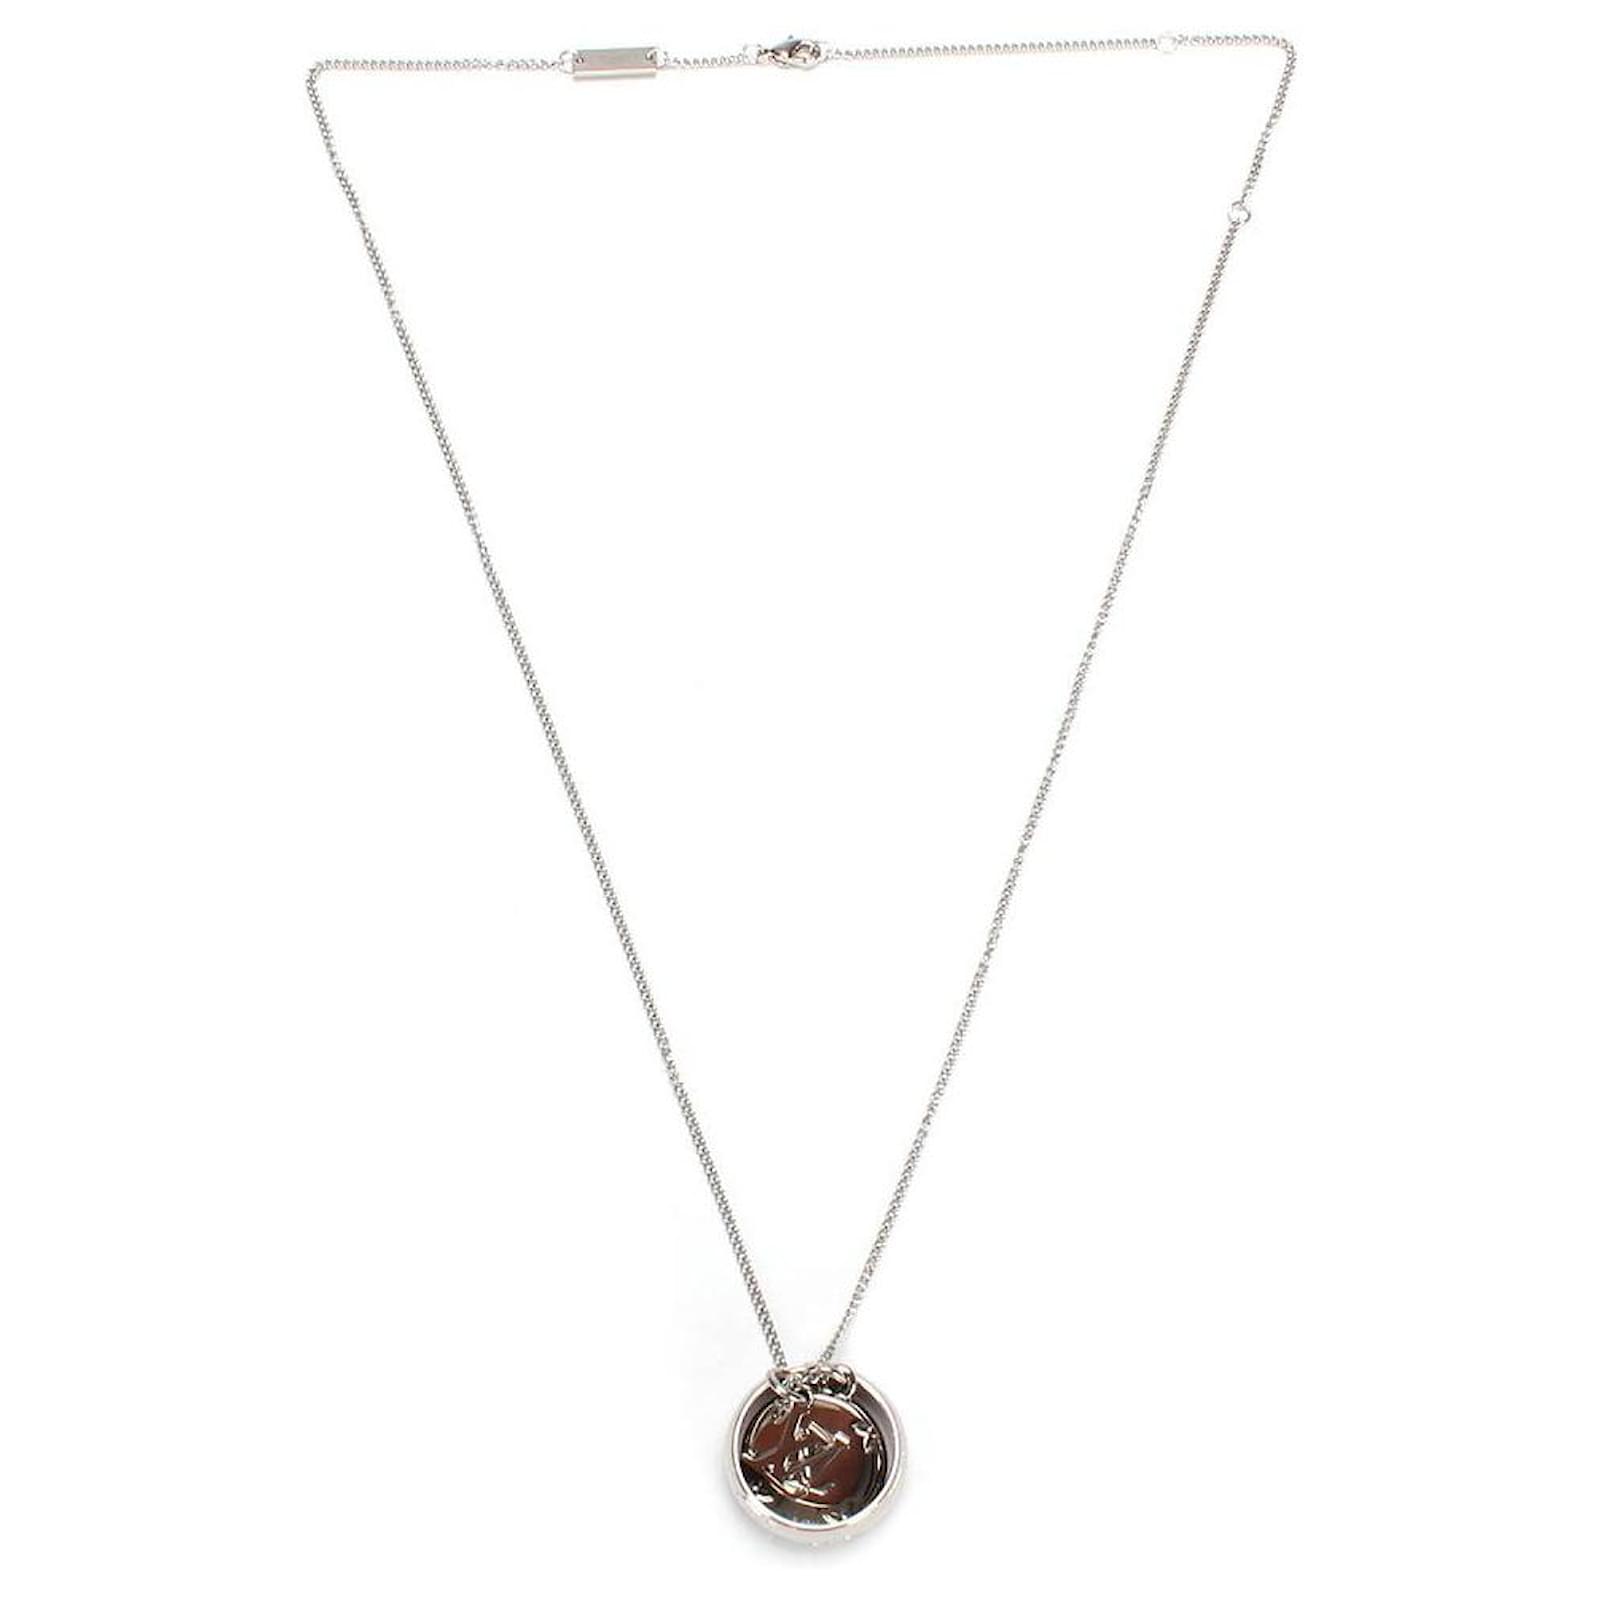 Louis Vuitton Monogram Charms Necklace